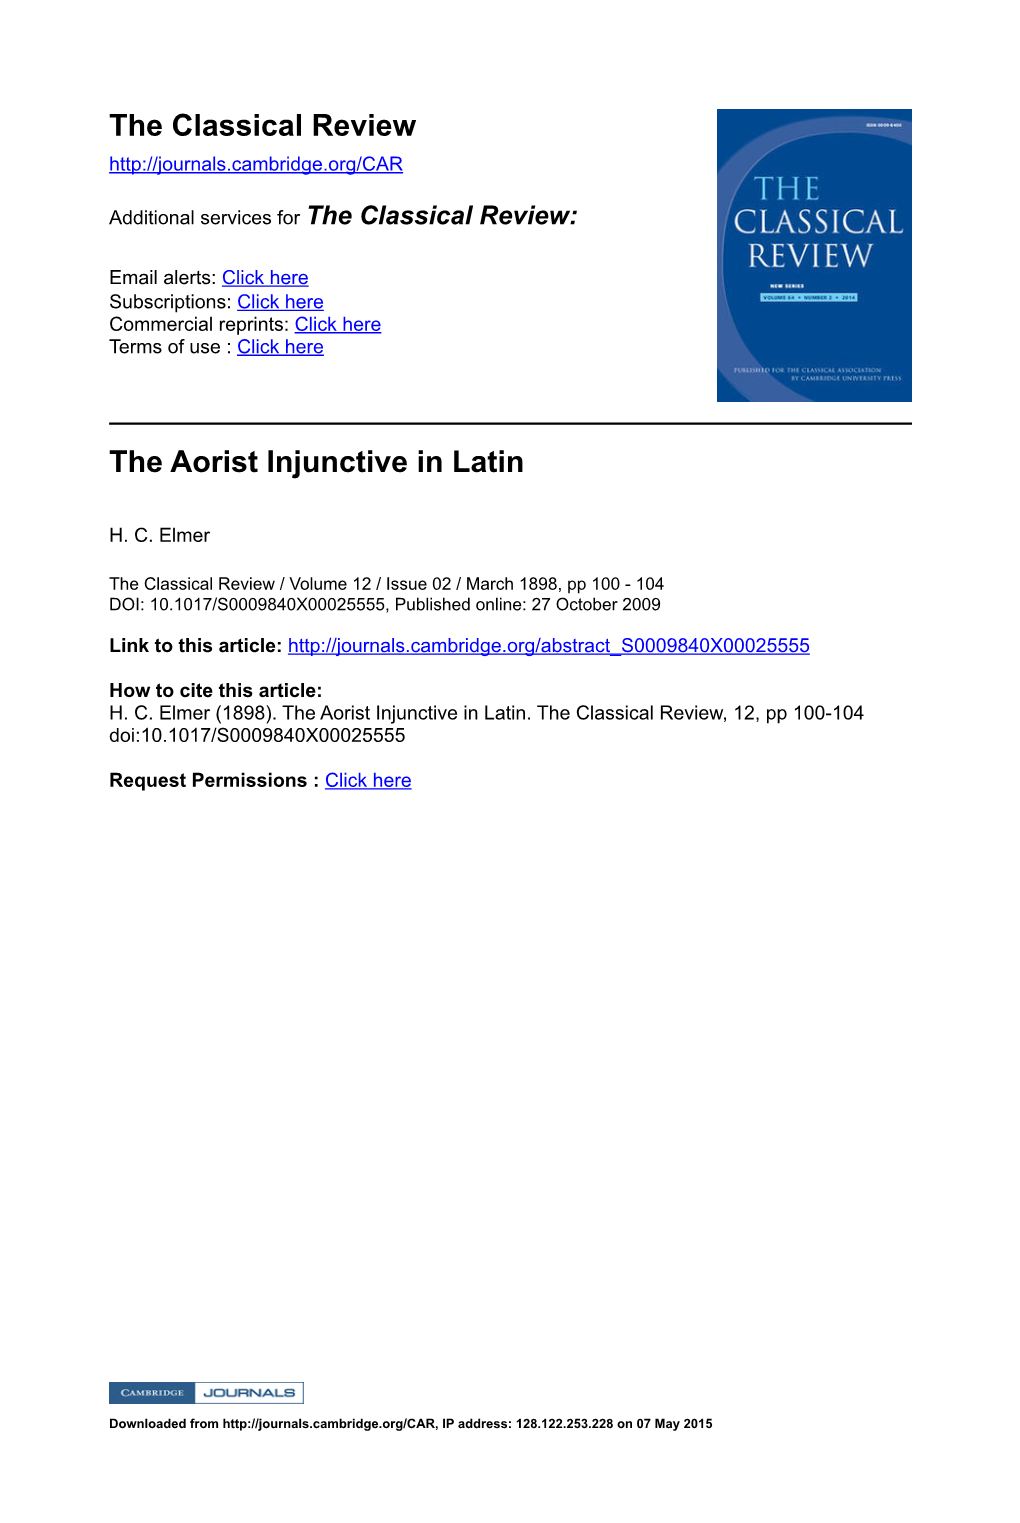 The Aorist Injunctive in Latin